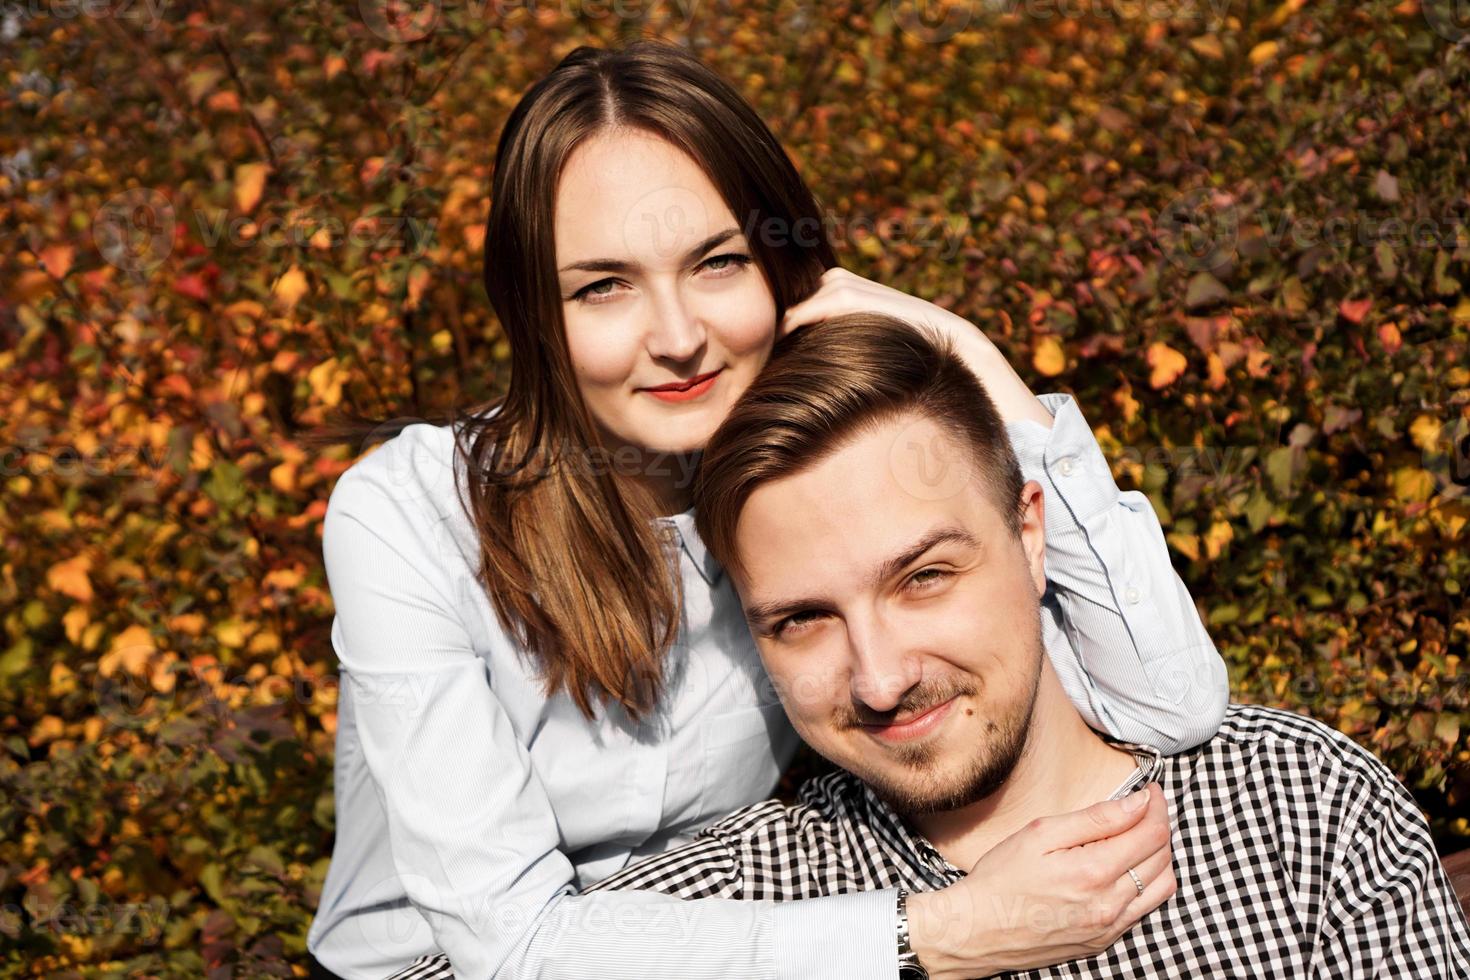 romantisch koppel in herfstpark - liefde, relatie en datingconcept foto